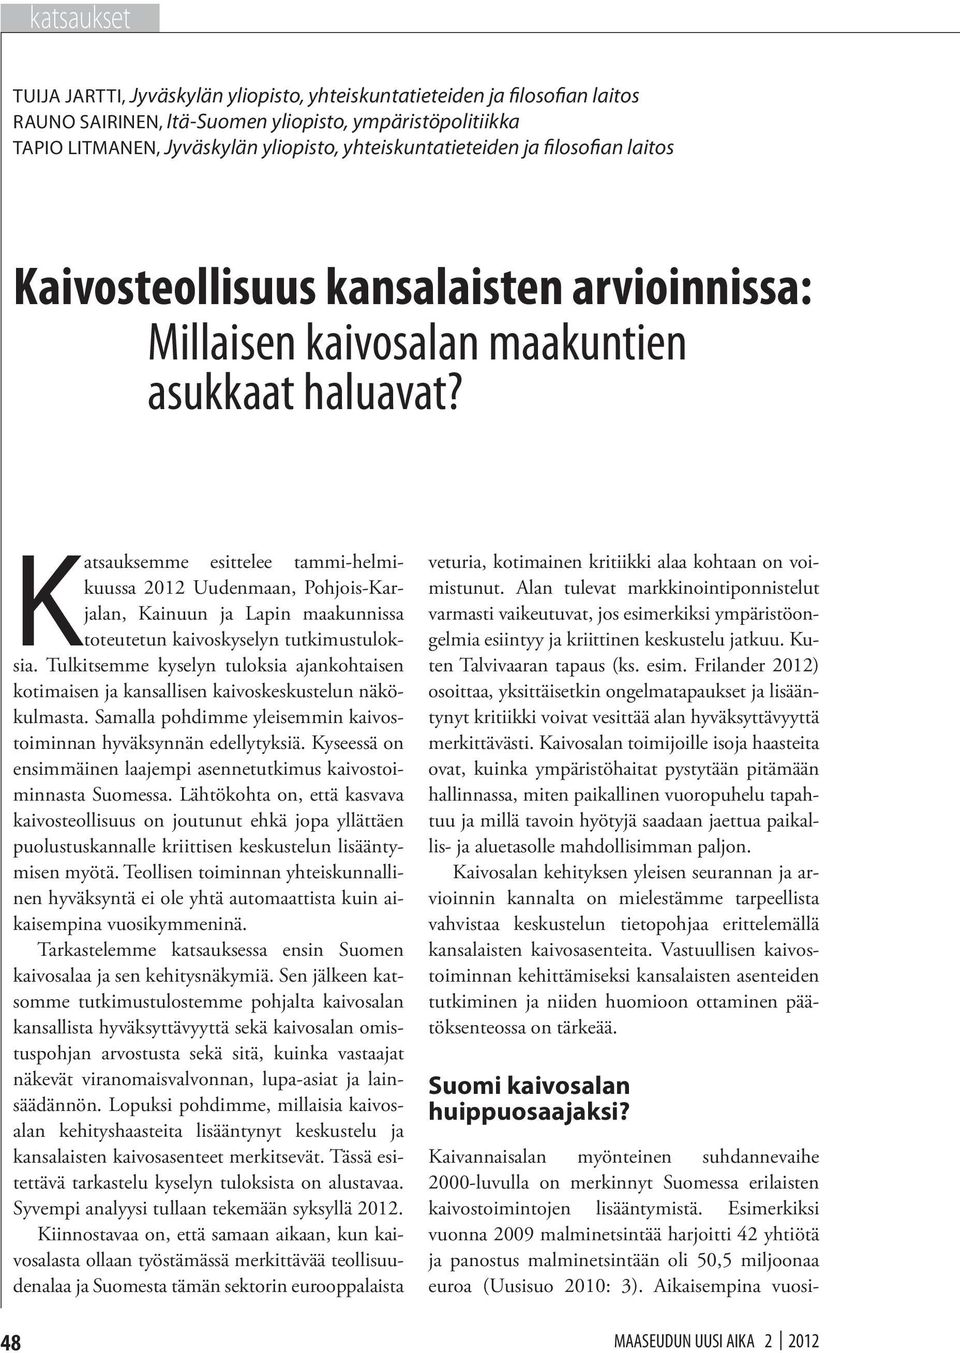 Katsauksemme esittelee tammi-helmikuussa 2012 Uudenmaan, Pohjois-Karjalan, Kainuun ja Lapin maakunnissa toteutetun kaivoskyselyn tutkimustuloksia.